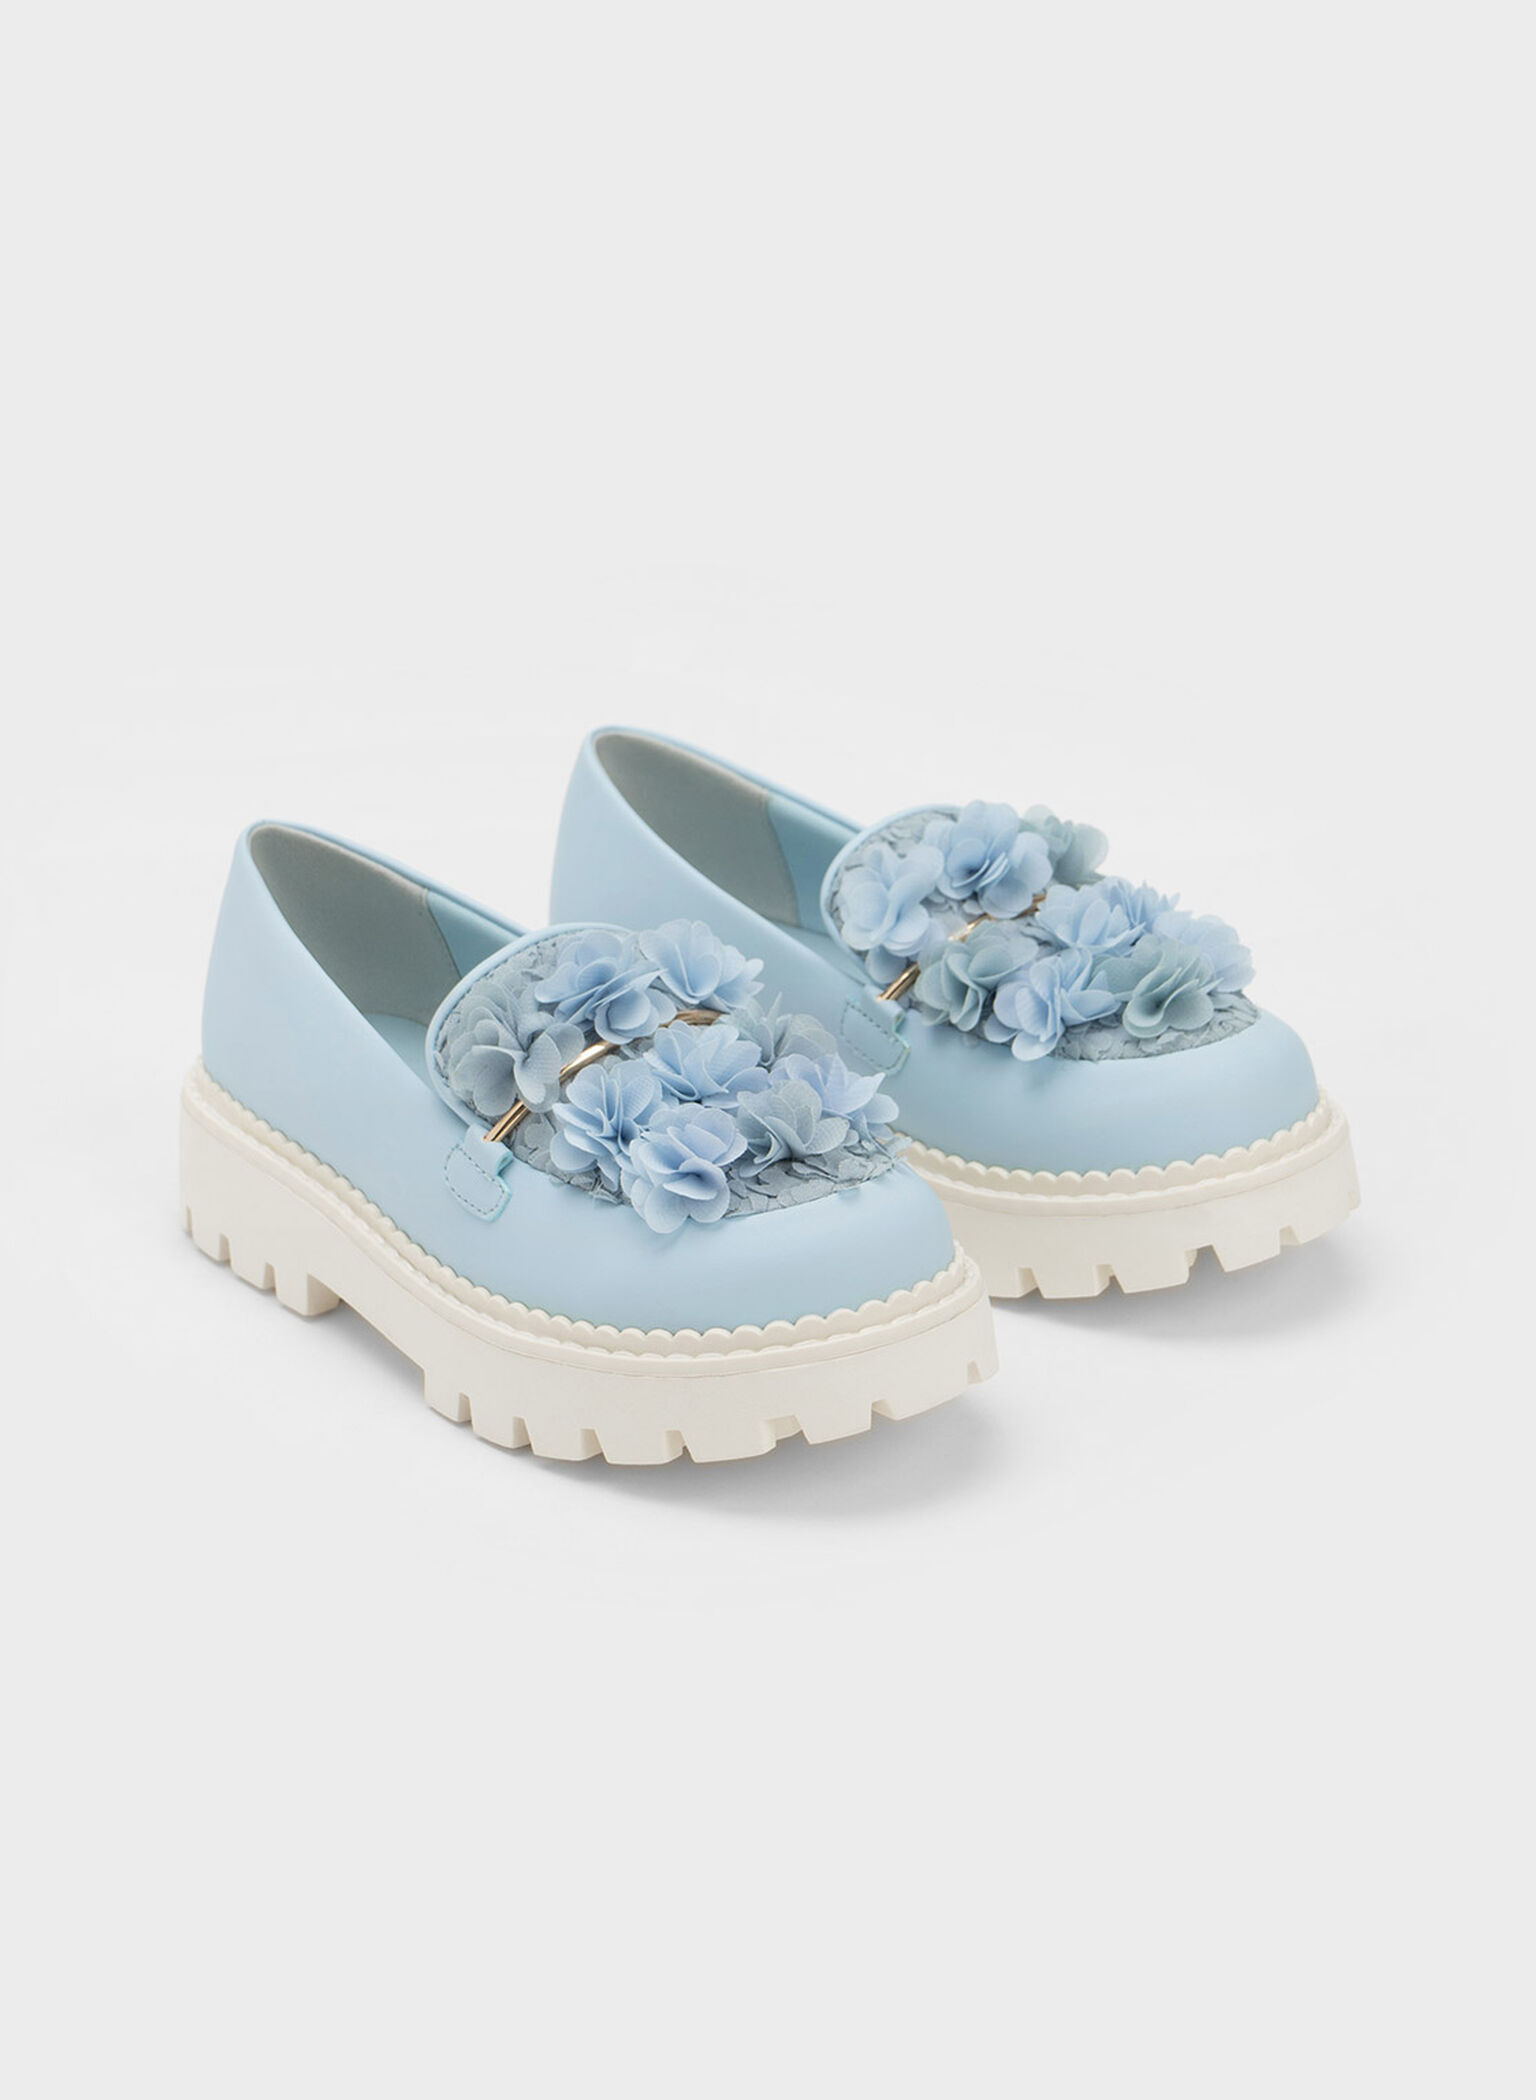 Girls' Floral Mesh Loafers, Light Blue, hi-res